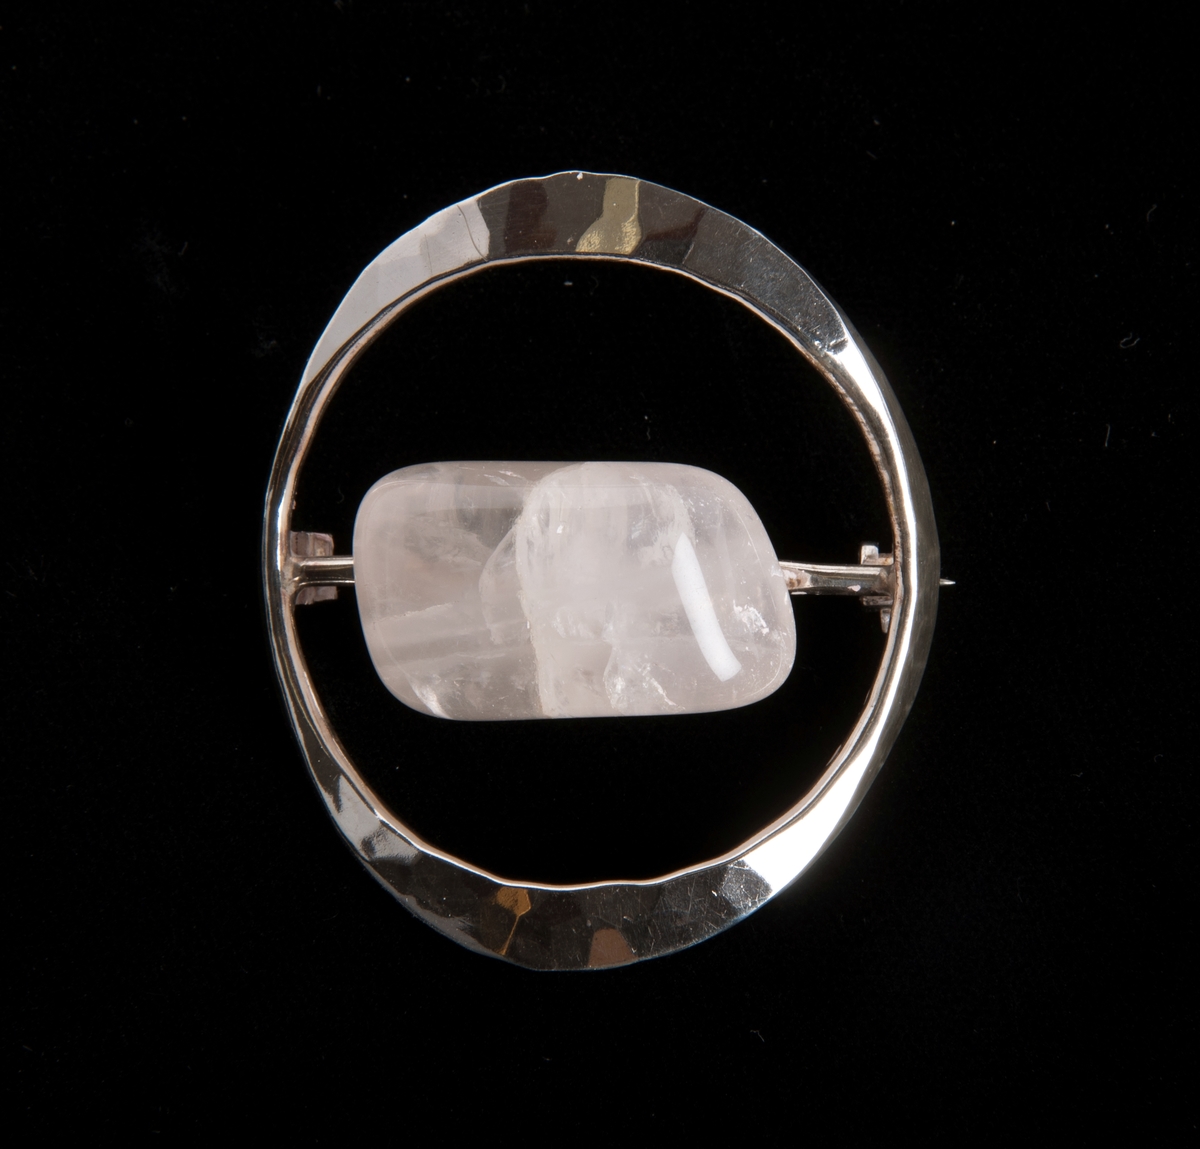 Åpen flathamret ring. En sølvstang er tredd i ringen som det er festet en stein på. Nålfeste bak stangen. Hvit, rektangulær stein. Ringen er hamret i to plan, 2+2 sider.